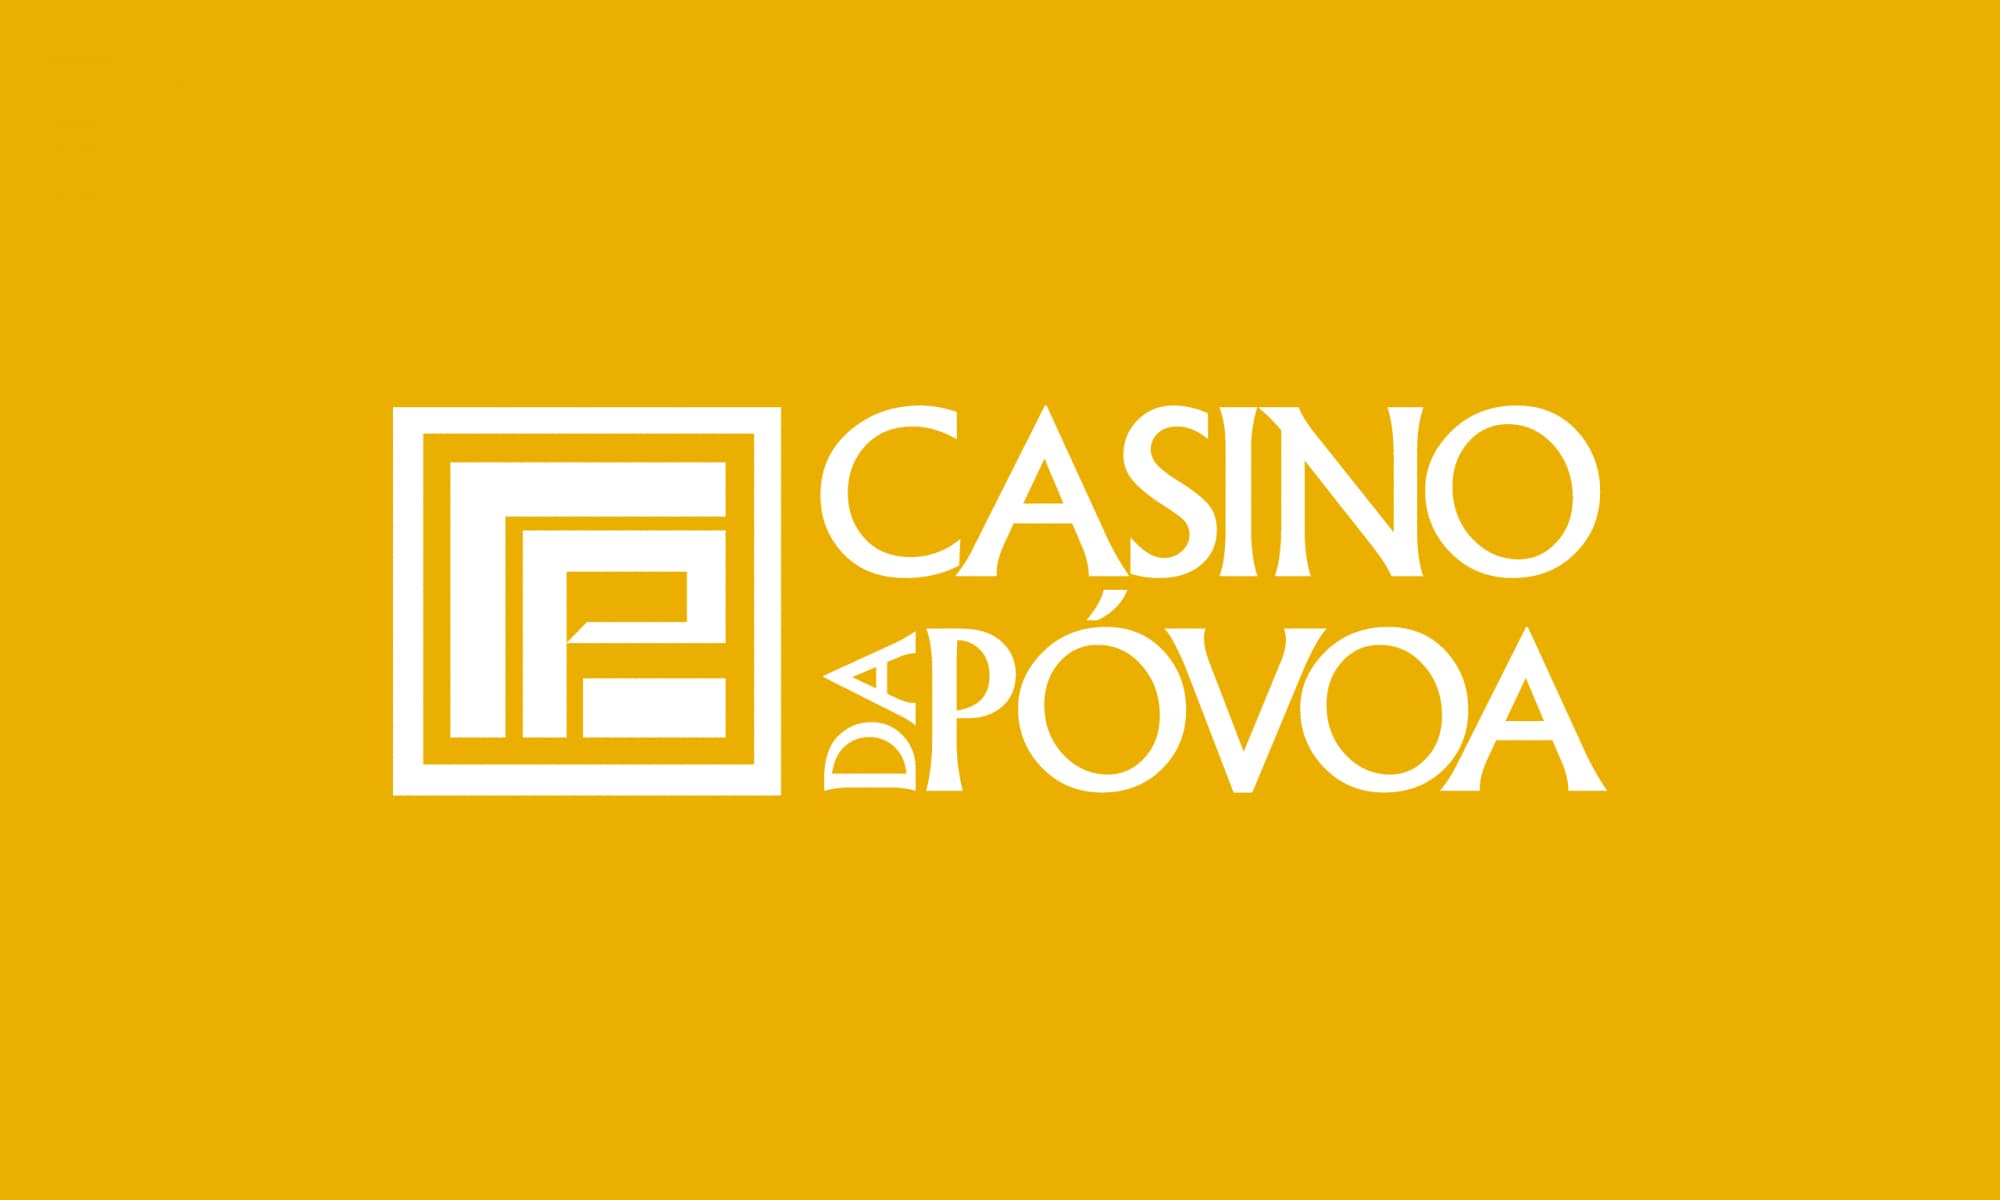 Casino da Póvoa